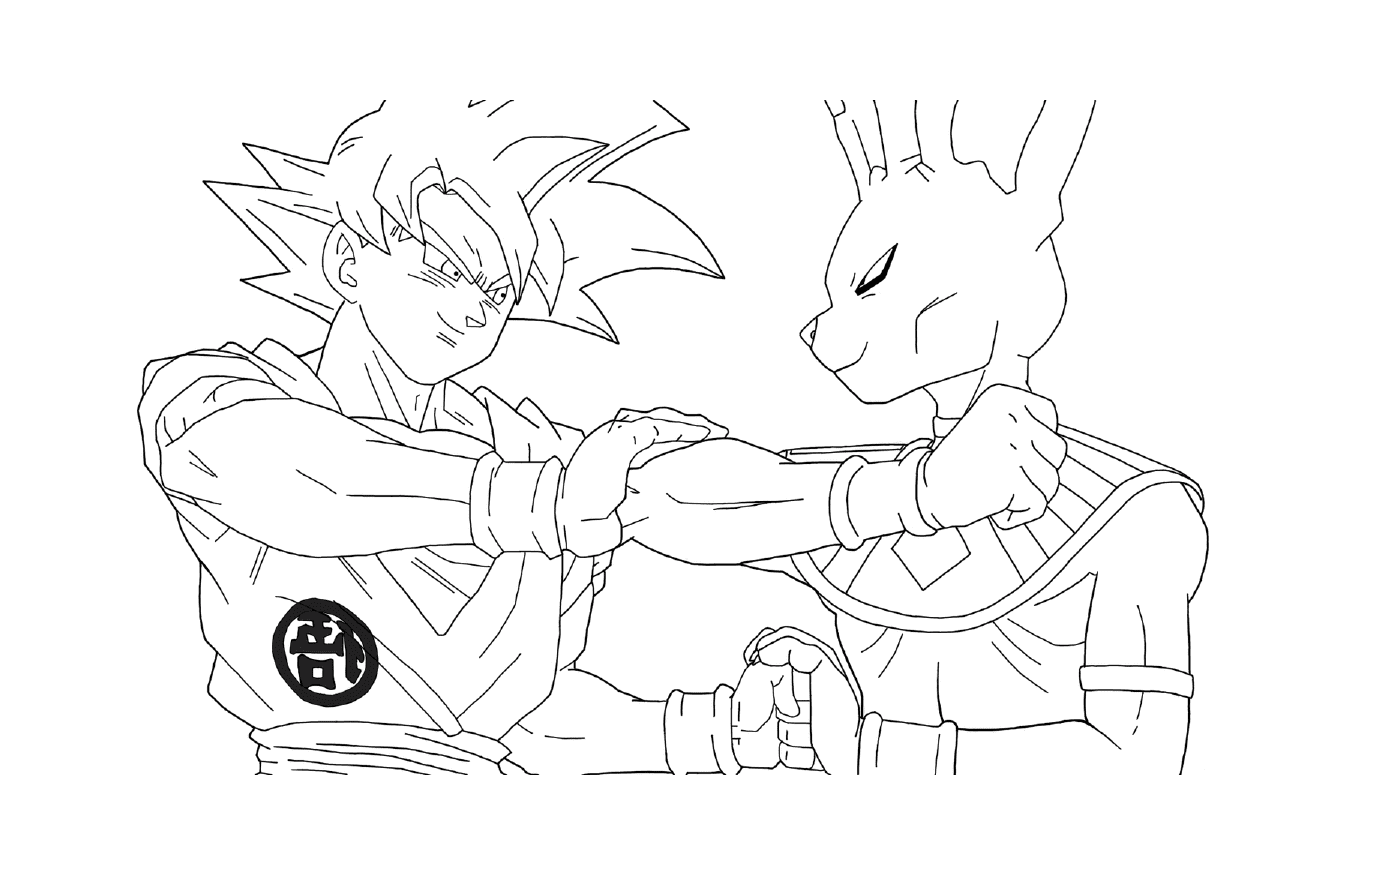  Beerus gegen Goku Super Saiyan Gold von DBZ 